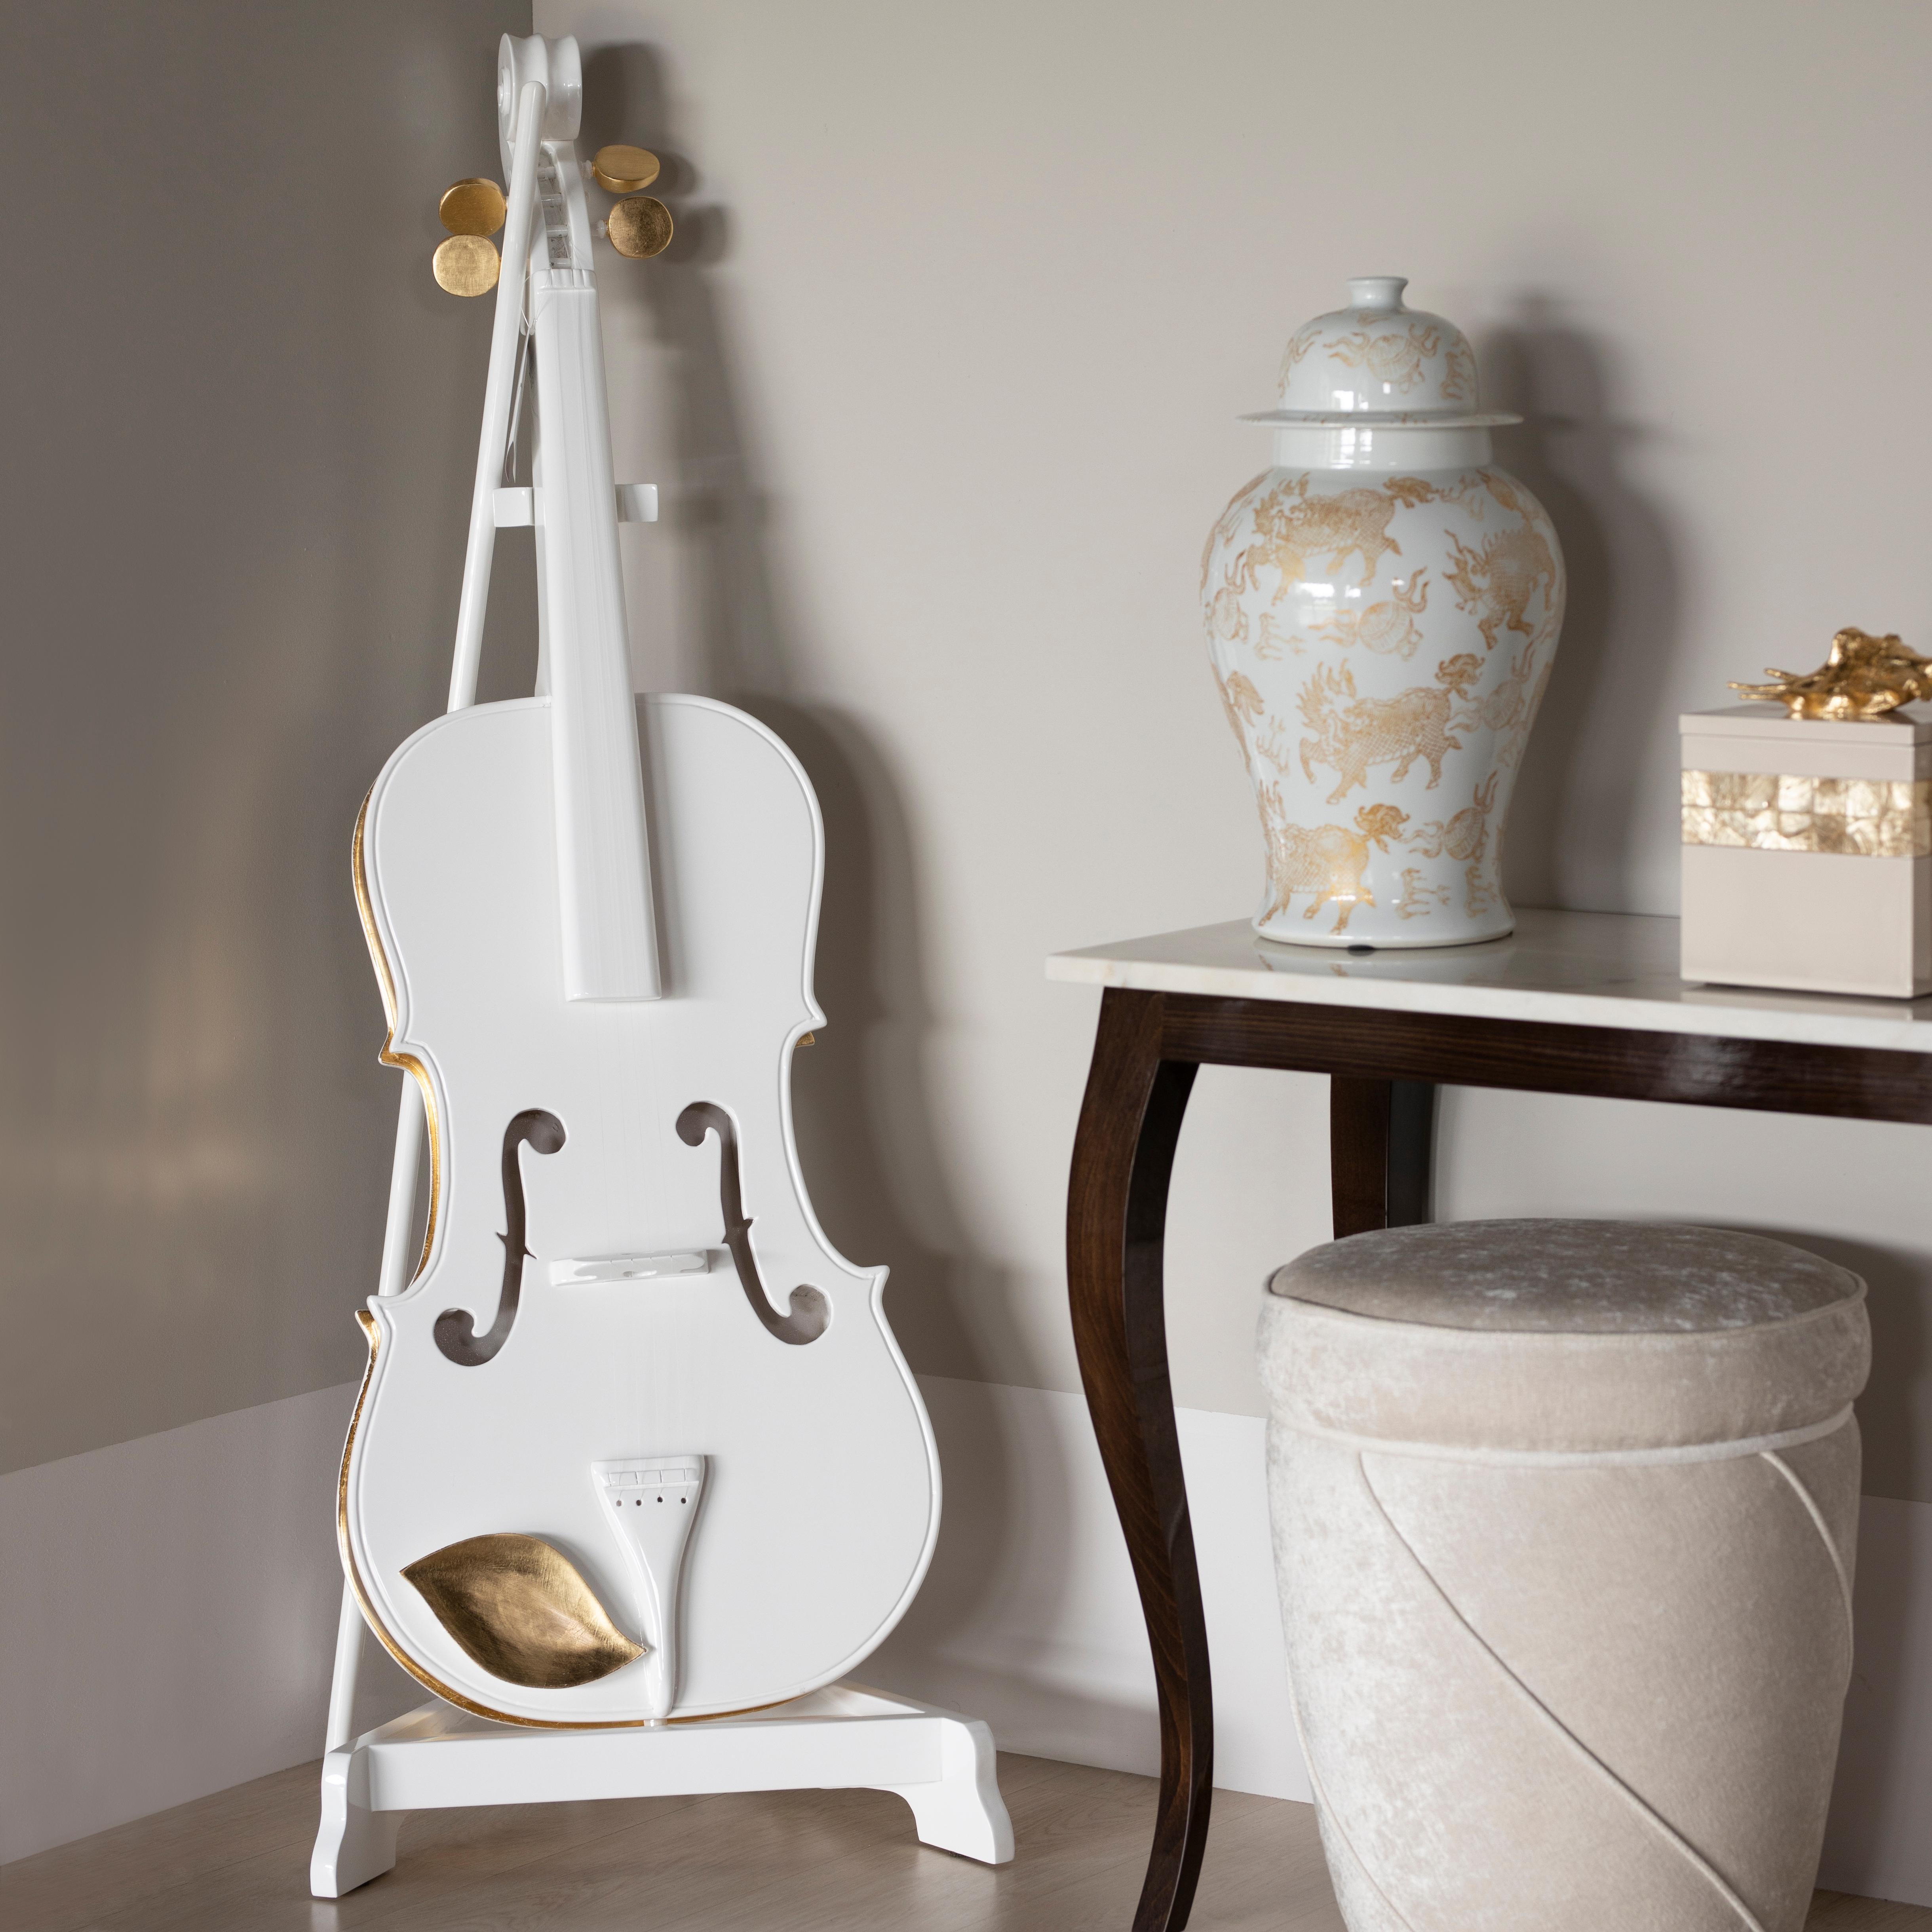 Dekorative Brahms Violine, Lusitanus Home Collection, handgefertigt in Portugal - Europa von Lusitanus Home.

Brahms wurde entwickelt, um luxuriöse Innenräume aufzuwerten. Die Ziergeige Brahms aus weißem Hochglanzlack mit handaufgelegten